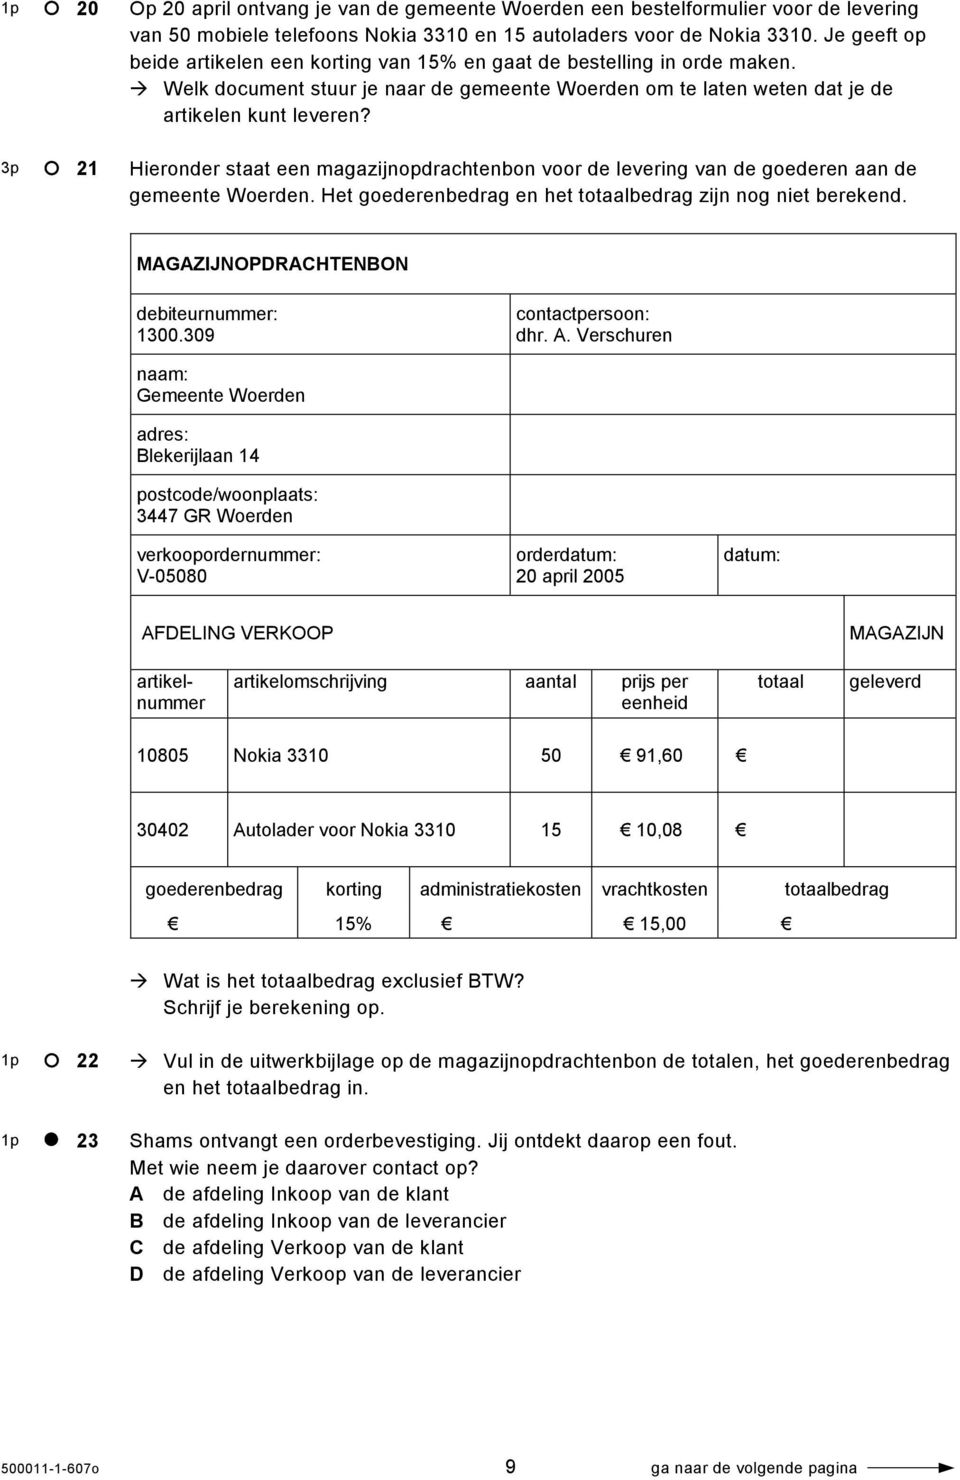 Hieronder staat een magazijnopdrachtenbon voor de levering van de goederen aan de gemeente Woerden. Het goederenbedrag en het totaalbedrag zijn nog niet berekend.